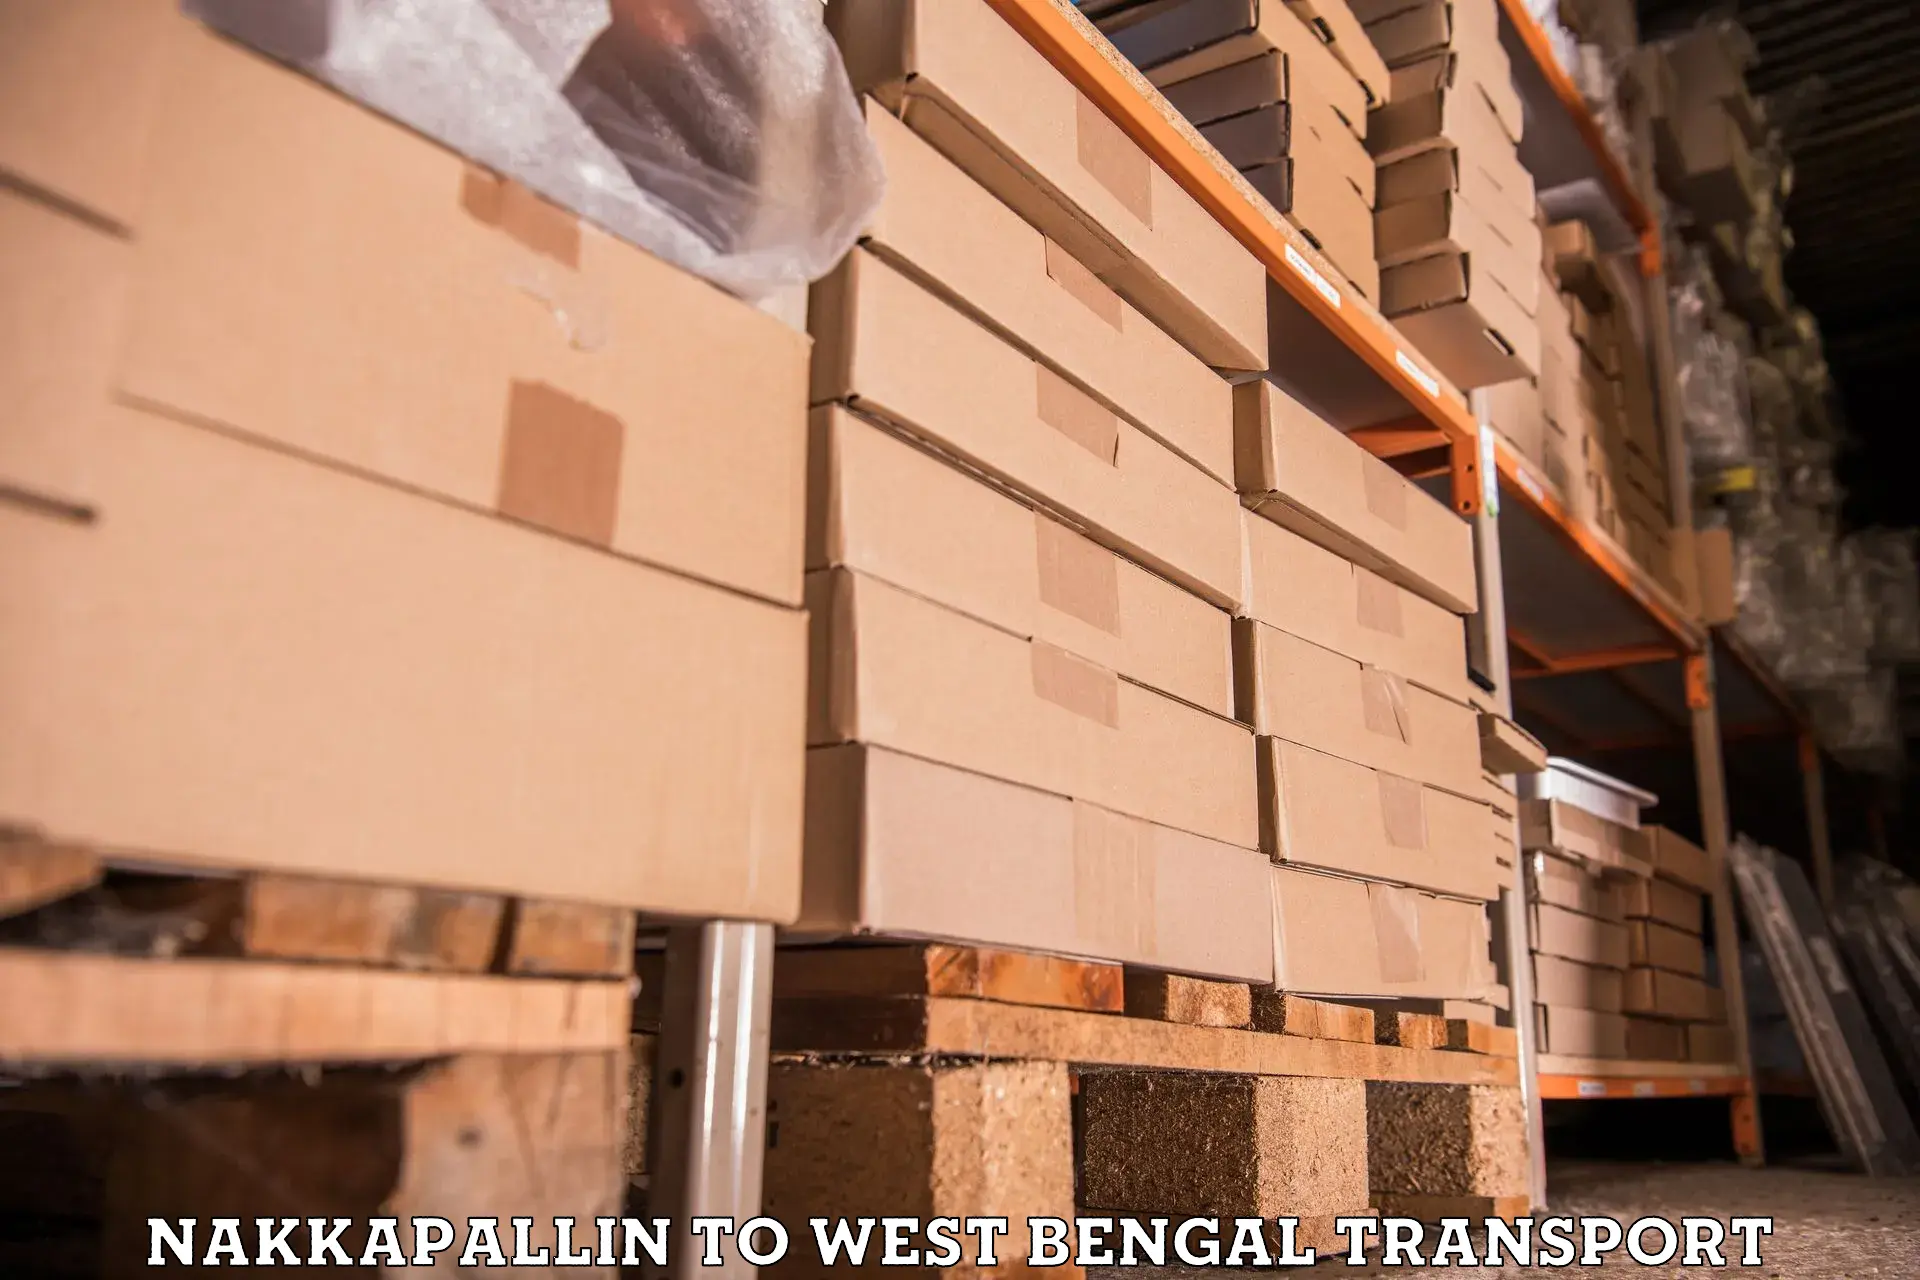 Bike shipping service Nakkapallin to Bolpur